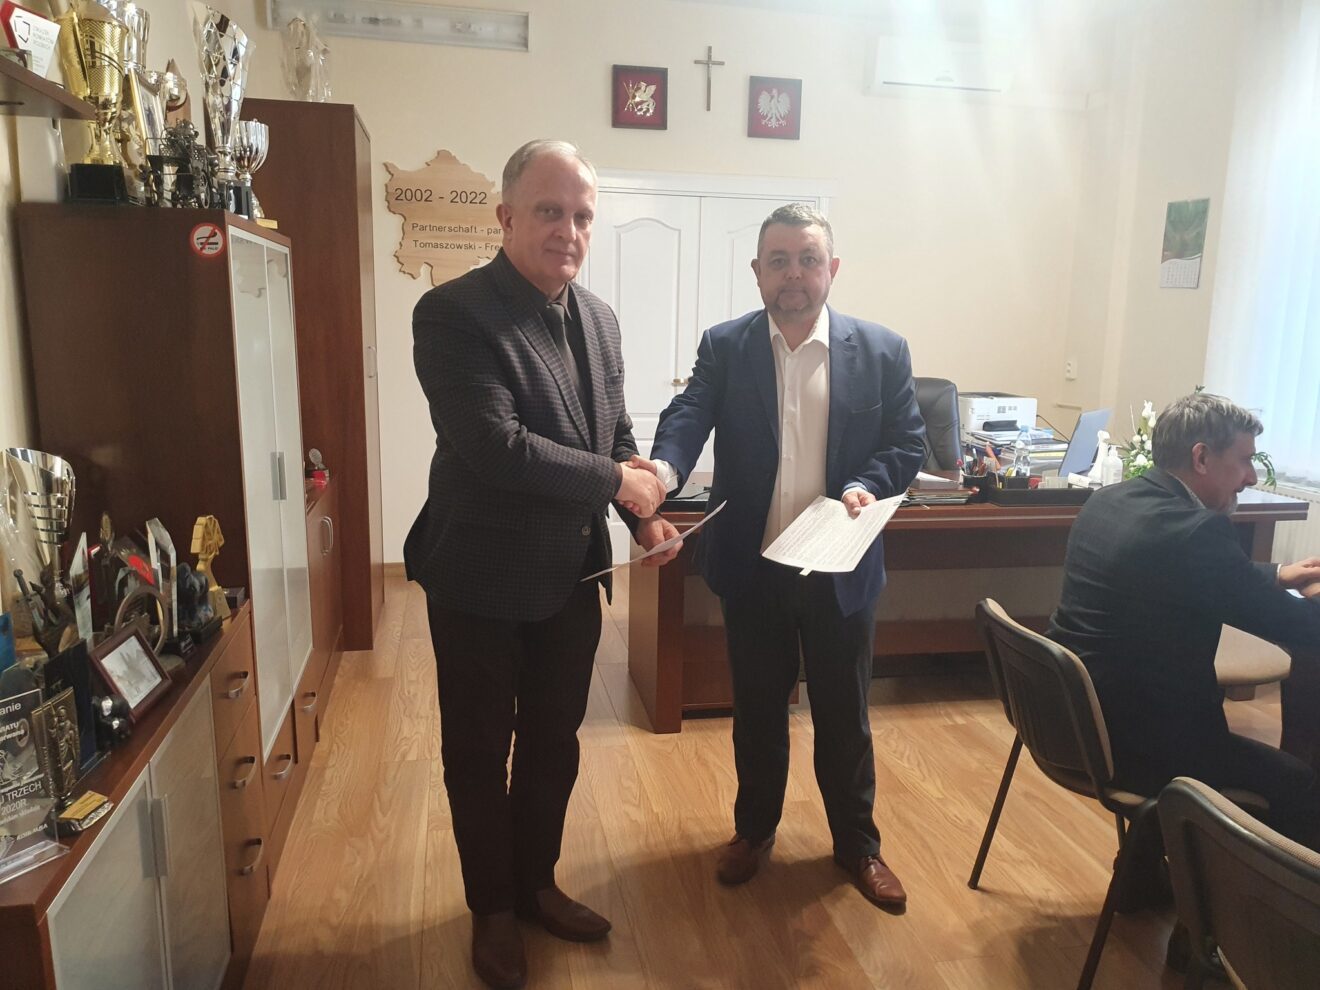 podpisano porozumienie pomiędzy Powiatem Tomaszowskim reprezentowanym przez Henryka Karwana - Starostę Tomaszowskiego, a Gminą Jarczów reprezentowaną przez Tomasza Tyrkę - Wójta Gminy Jarczów.